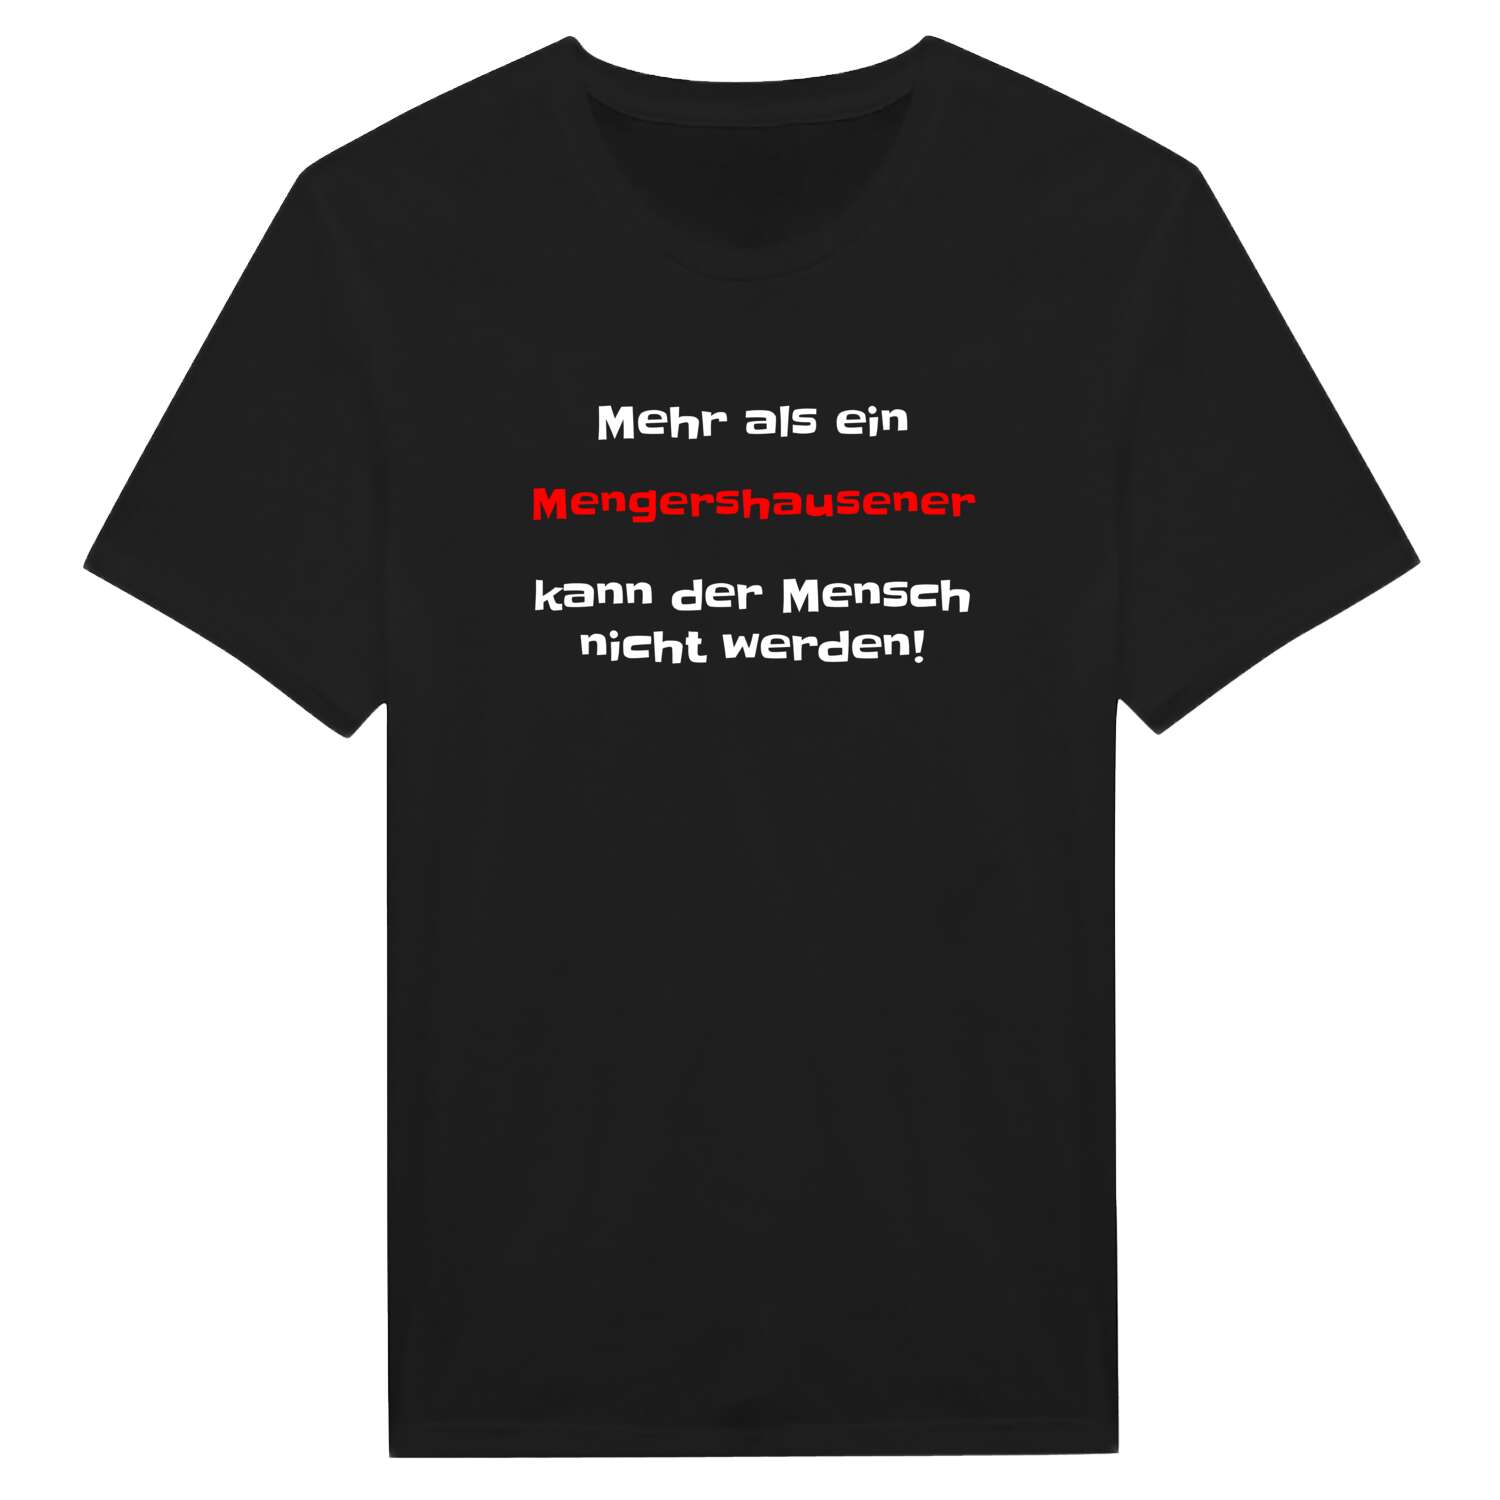 Mengershausen T-Shirt »Mehr als ein«